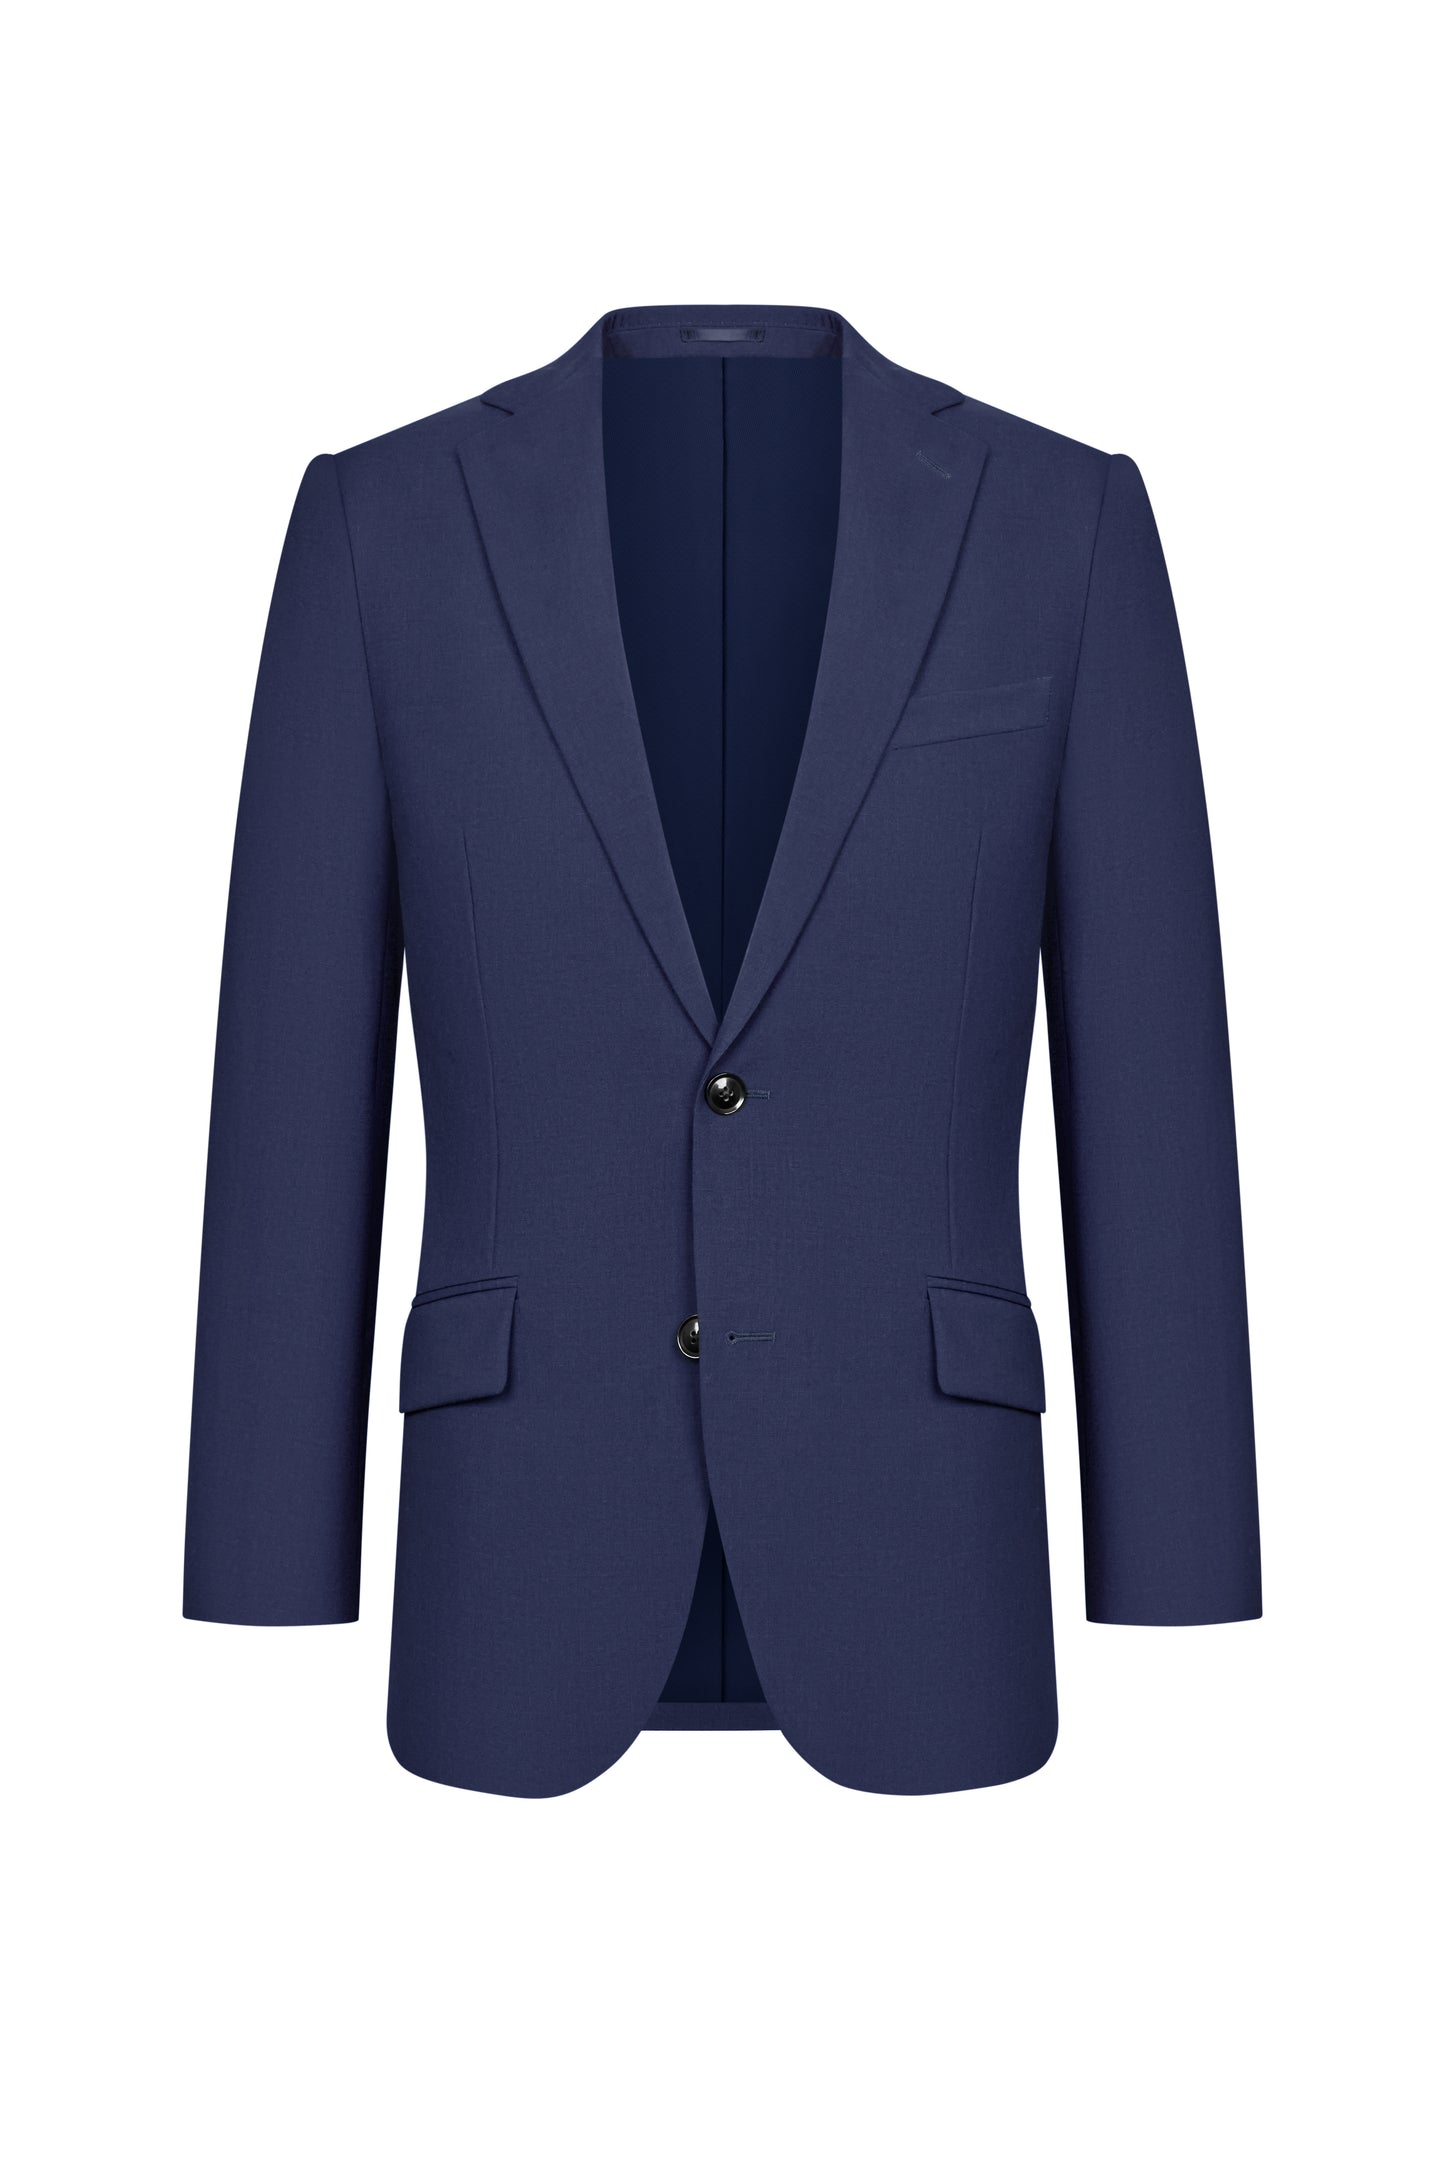 Scabal Royal Blue Plain Weave Custom Suit